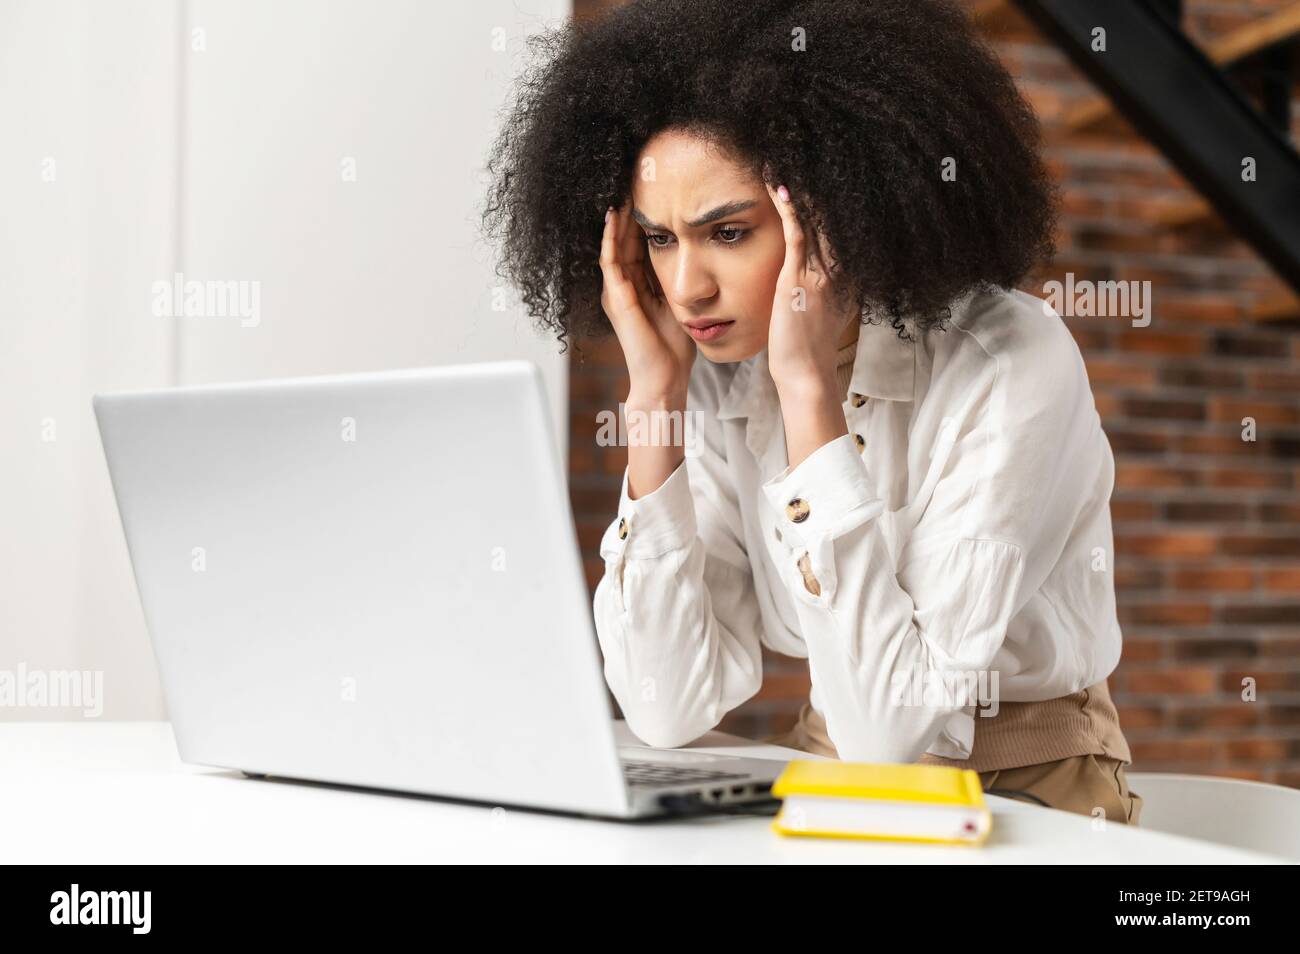 Jeune femme désorientée travaillant au bureau étant sous le stress émotionnel, regardant l'ordinateur portable, tenant ses mains à ses temples, se froisser le front, surtravaillé, l'ordinateur est cassé, ce qui s'est passé Banque D'Images